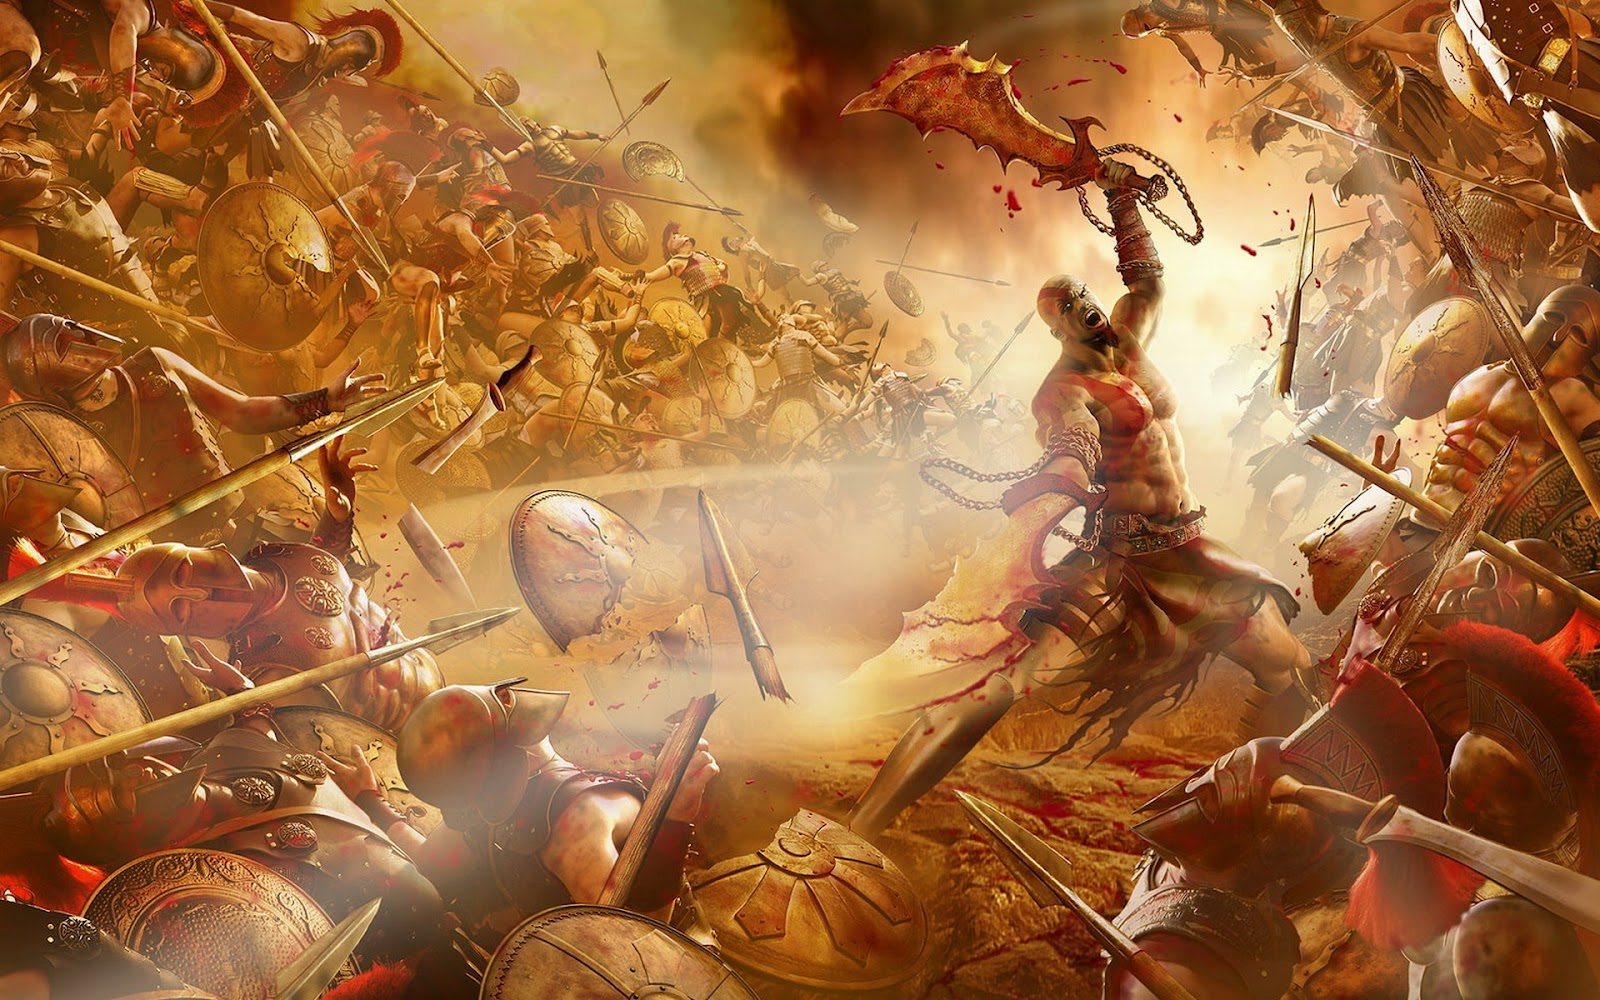 http://4.bp.blogspot.com/-zK3lWgR0x7k/UBceSkaBgoI/AAAAAAAAC7c/51GTbGw602o/s1600/god-of-war-3-fighting-game.jpg